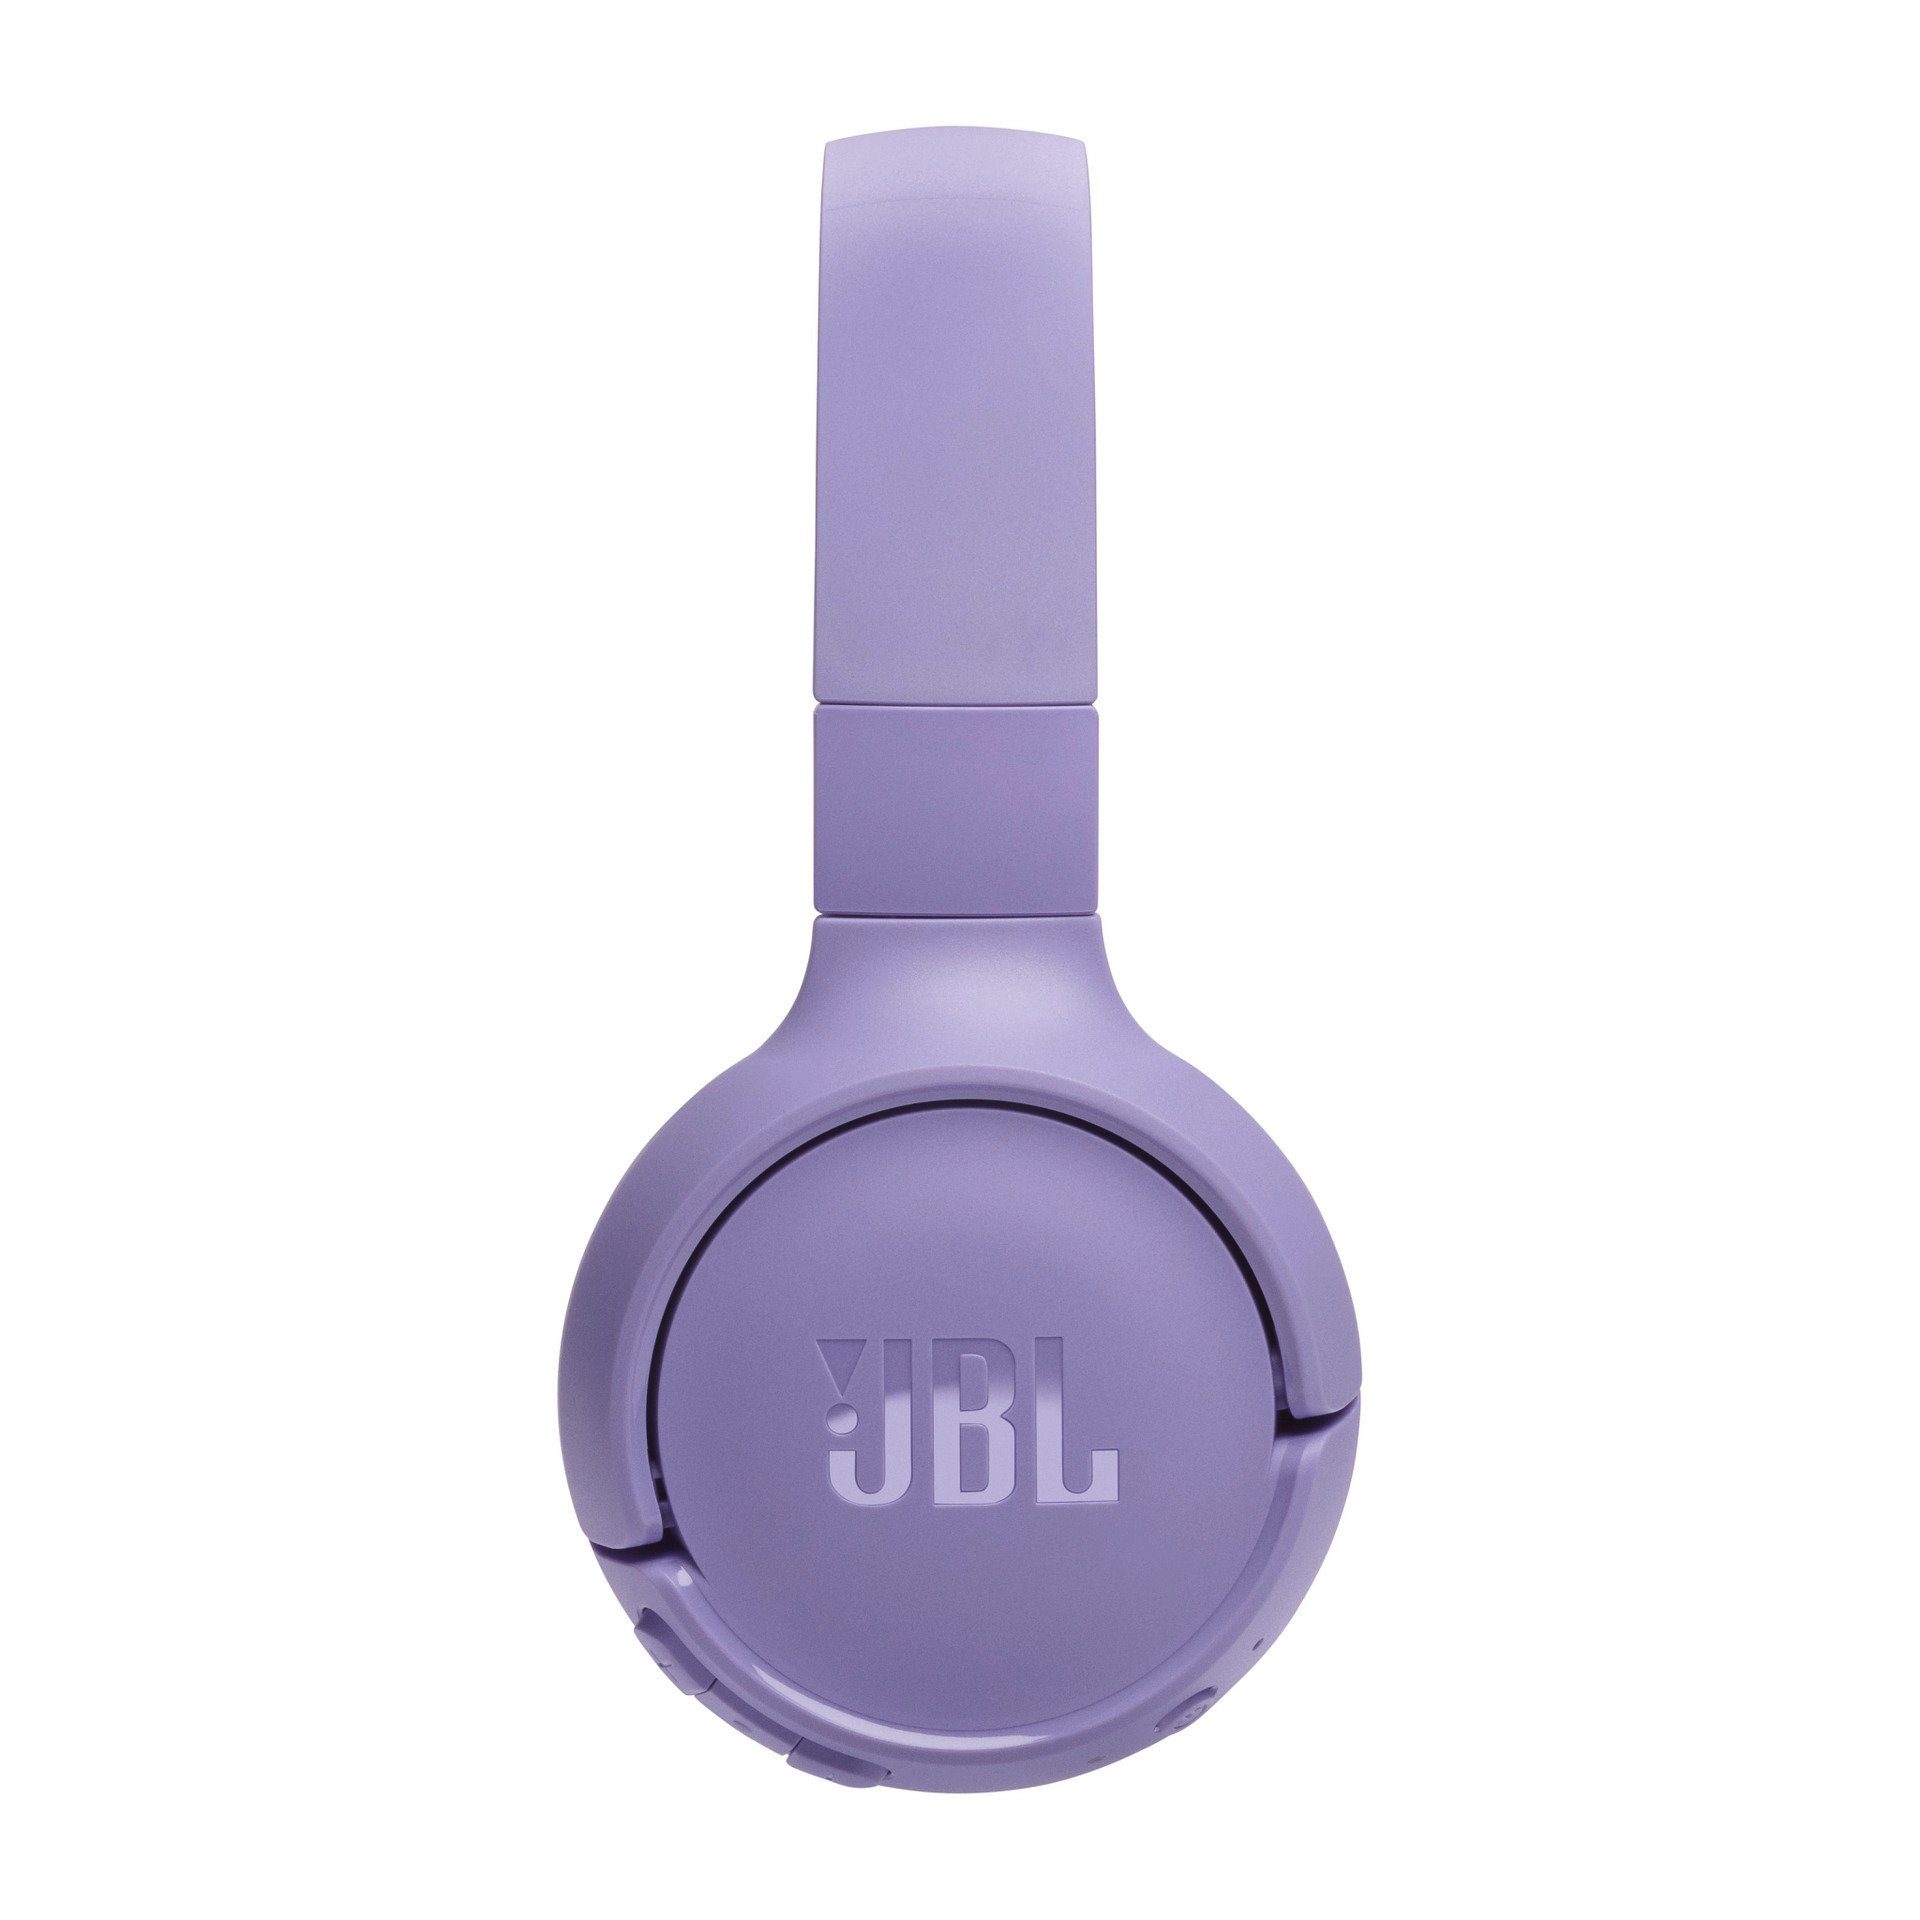 Lila BT 520 Tune JBL Over-Ear-Kopfhörer